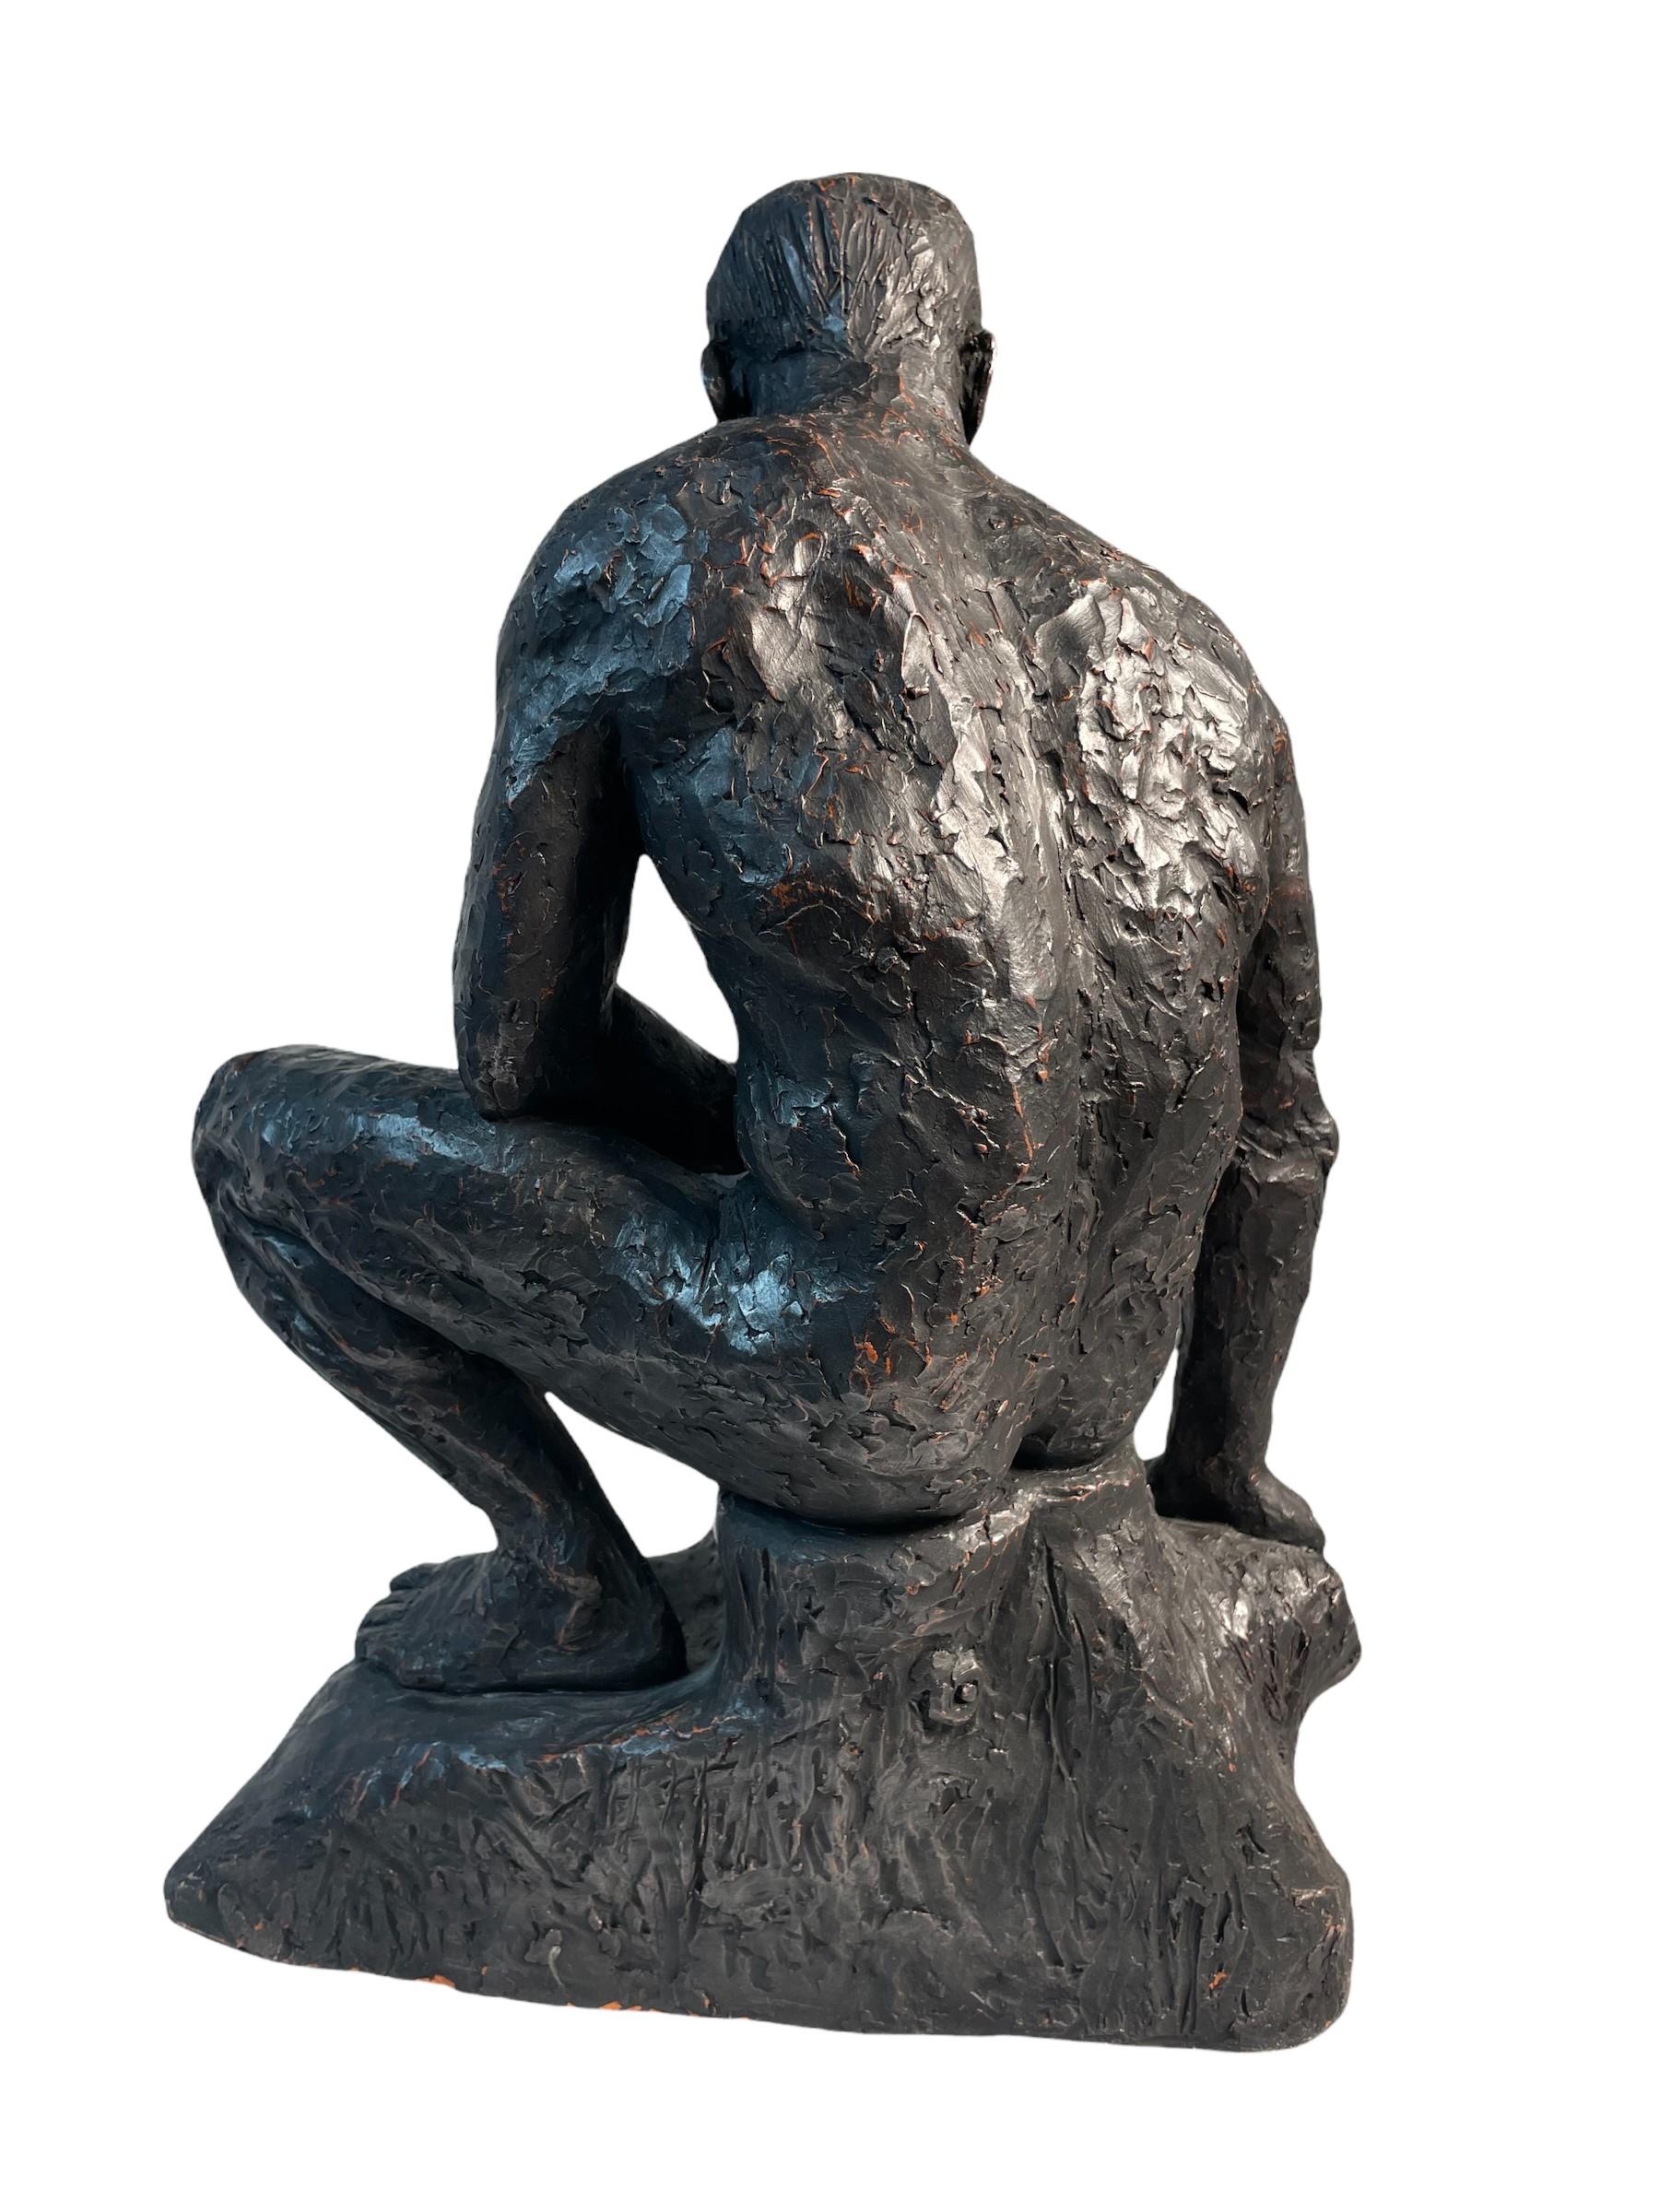 Große Tonskulptur einer sitzenden männlichen Figur des zeitgenössischen britischen Künstlers David T. Waller. Der Ton wird von Hand grob geformt, wodurch er ein strukturiertes Aussehen erhält, und dann schwarz bemalt, um die modellierte Form zu